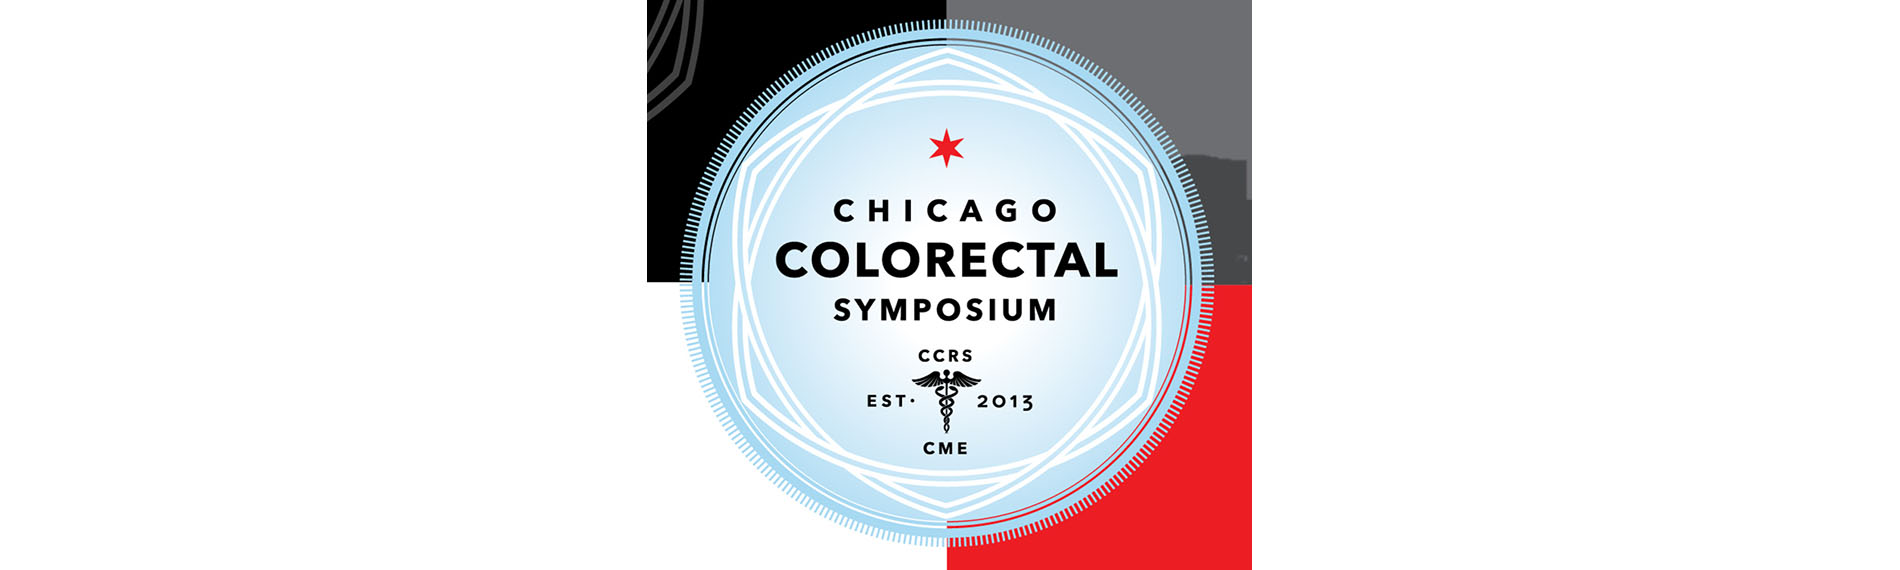 7th Annual Chicago Colorectal Symposium